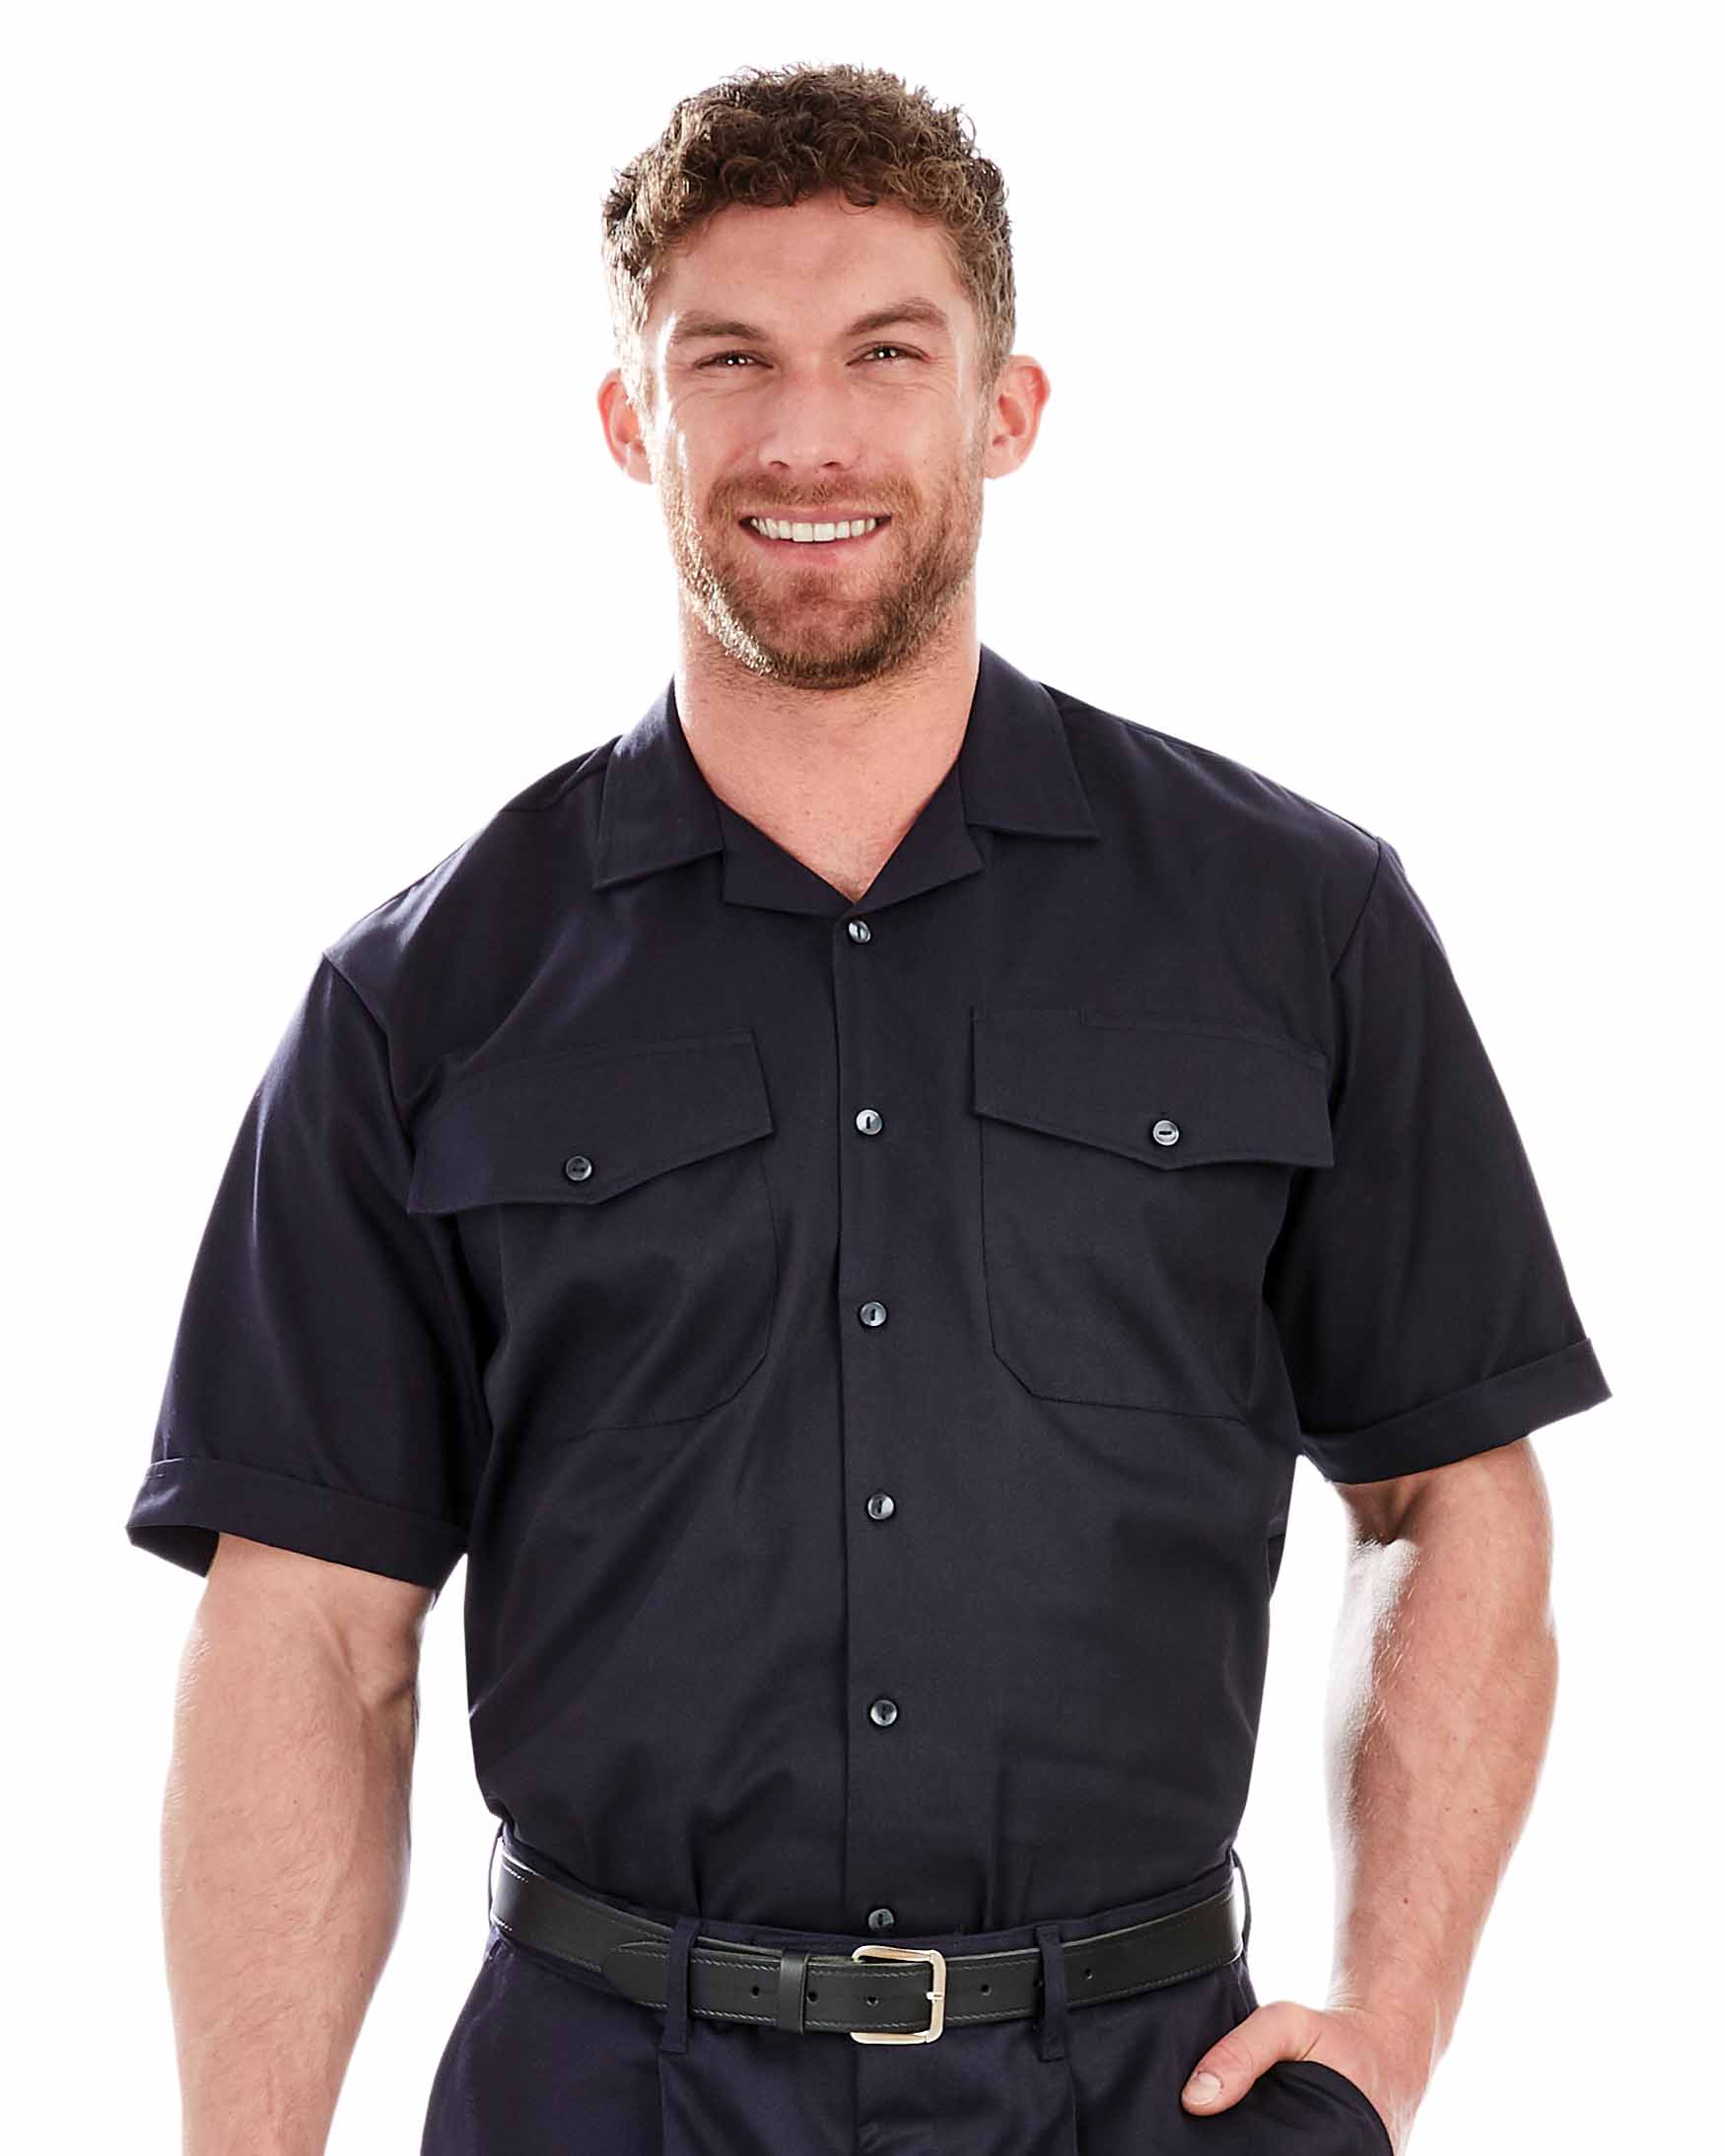 Men’s Lightweight Short Sleeve Fire Shirt – Navy